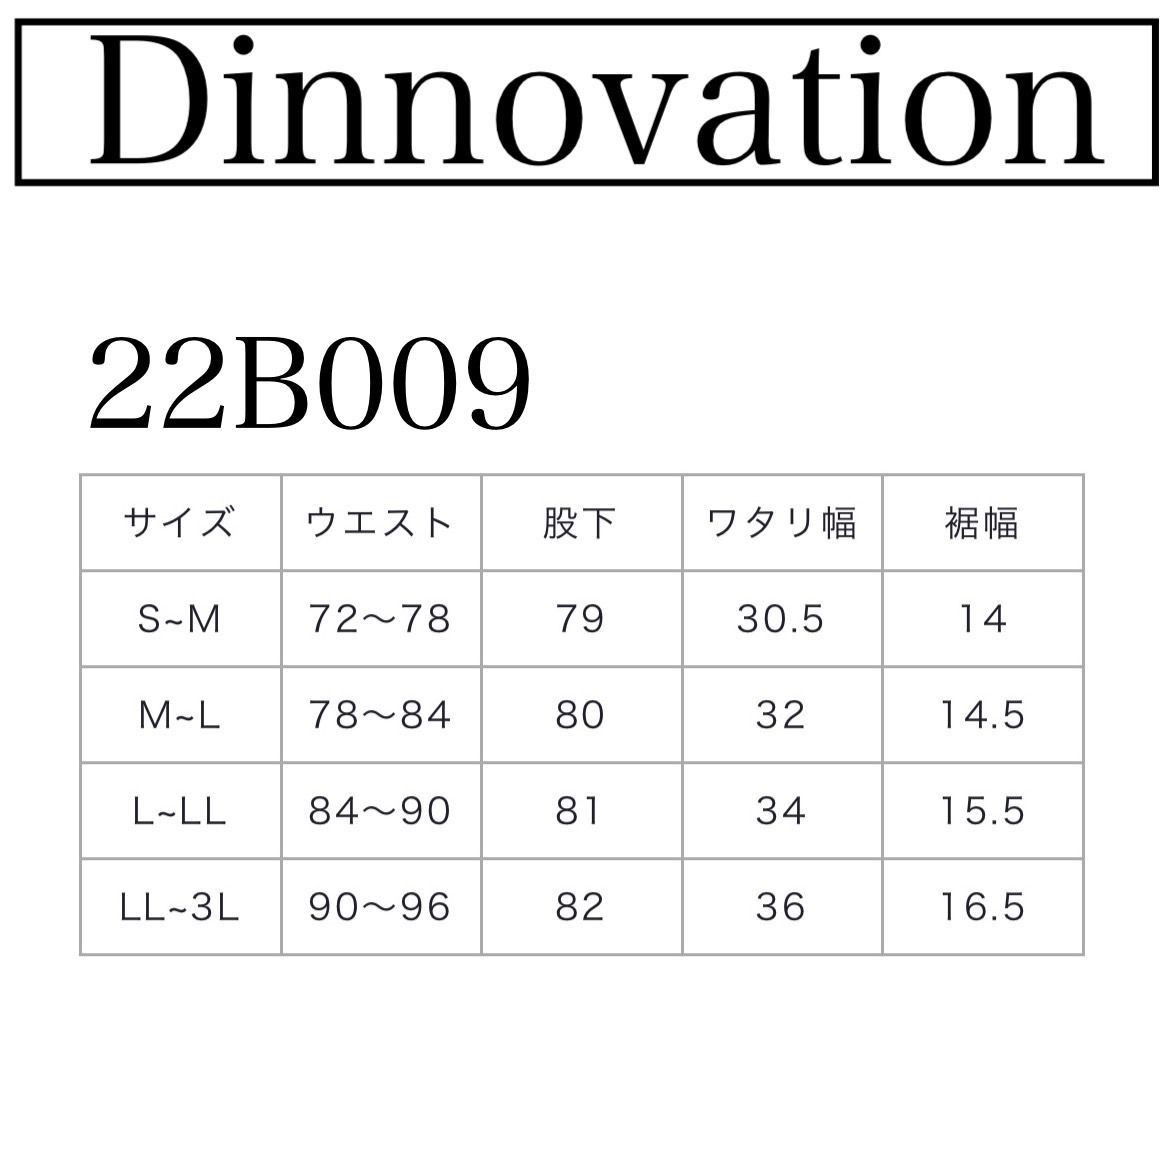 ディノベーション 22J008/22B009 ﾗｲﾄｸﾞﾚｰ 上下1セット - 作業服のRyu-2